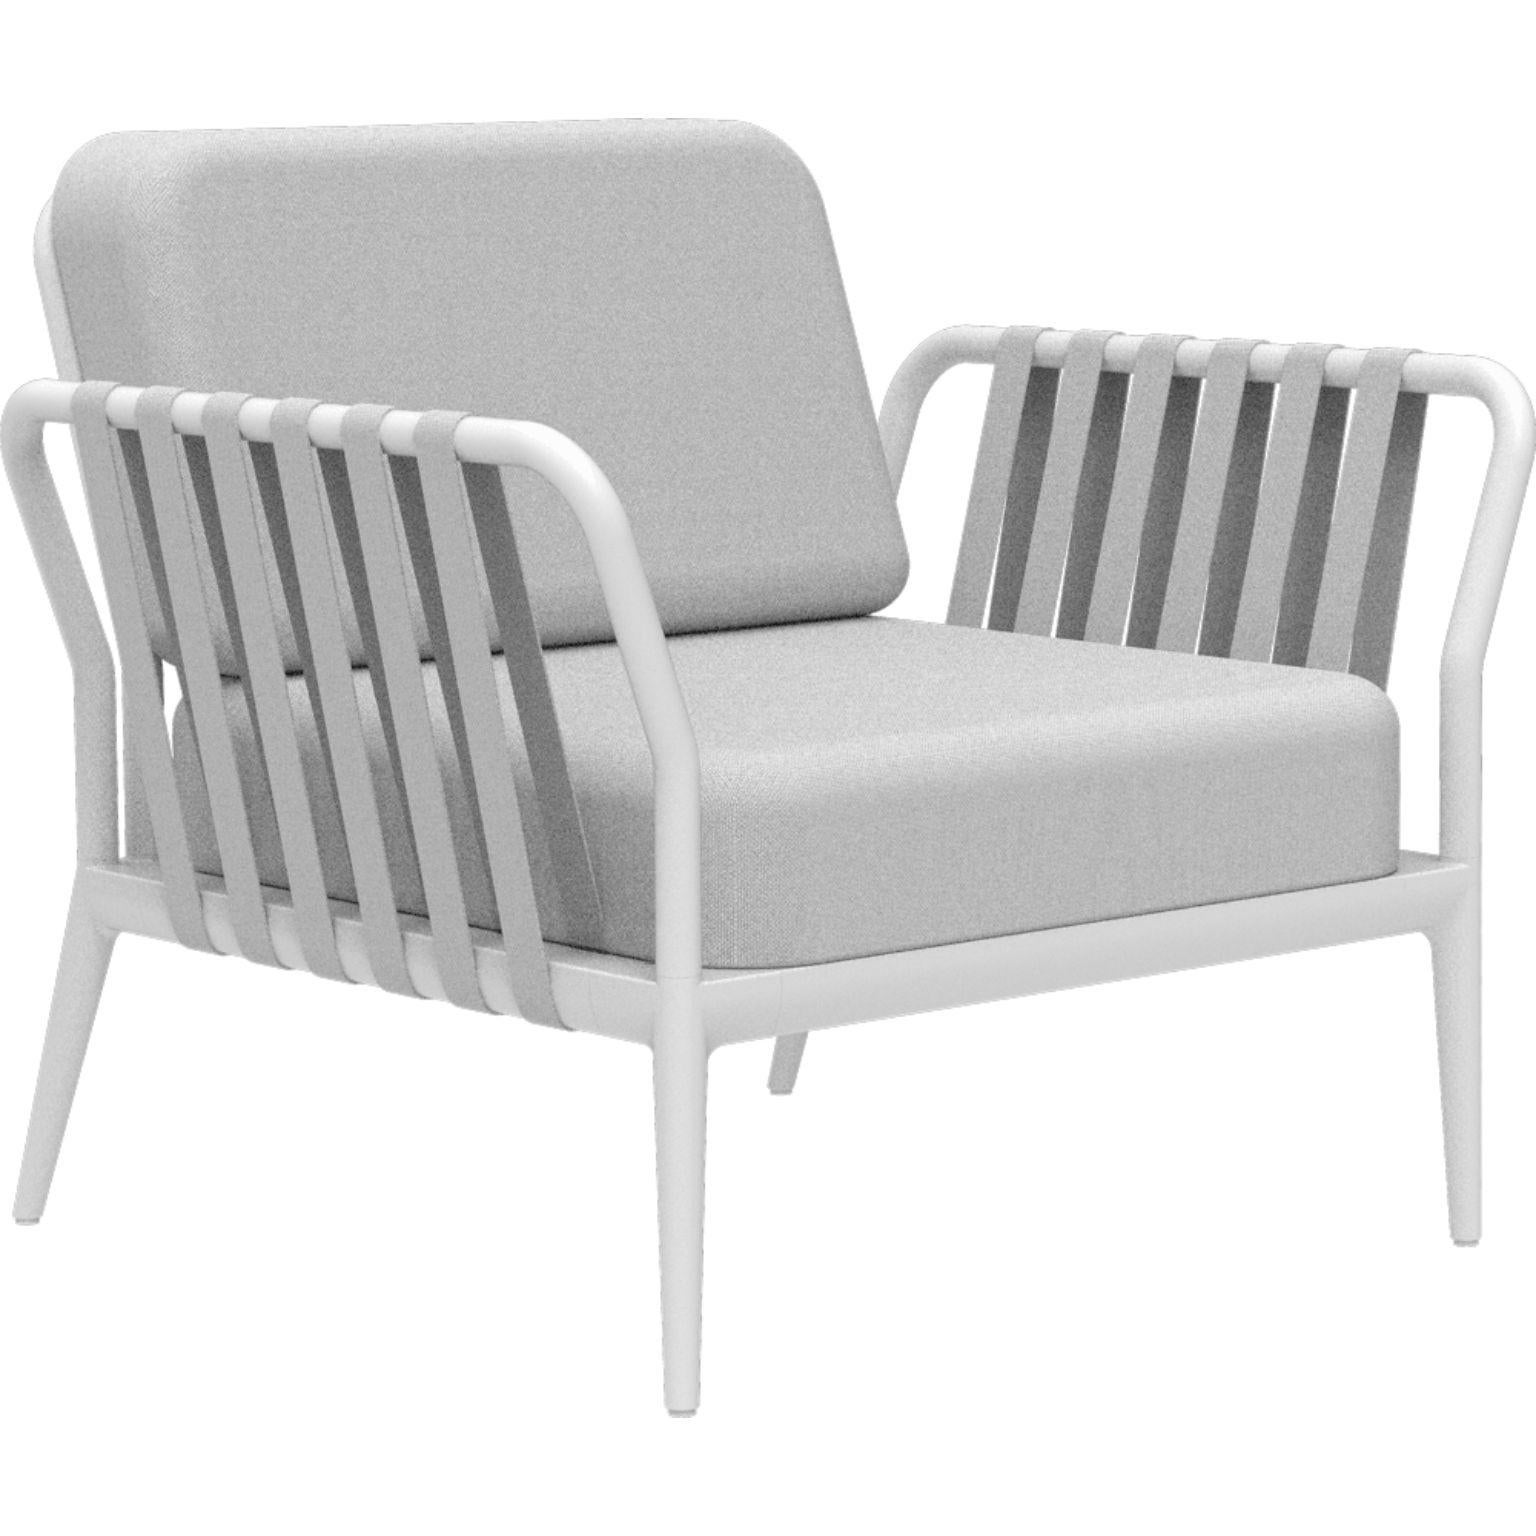 Weißer Sessel mit Bändern von MOWEE
Abmessungen: T83 x B91 x H81 cm (Sitzhöhe 42 cm)
MATERIAL: Aluminium, Polstermöbel
Gewicht: 20 kg
Auch in verschiedenen Farben und Ausführungen erhältlich. 

Eine Collection'S, die durch ihre Schönheit und